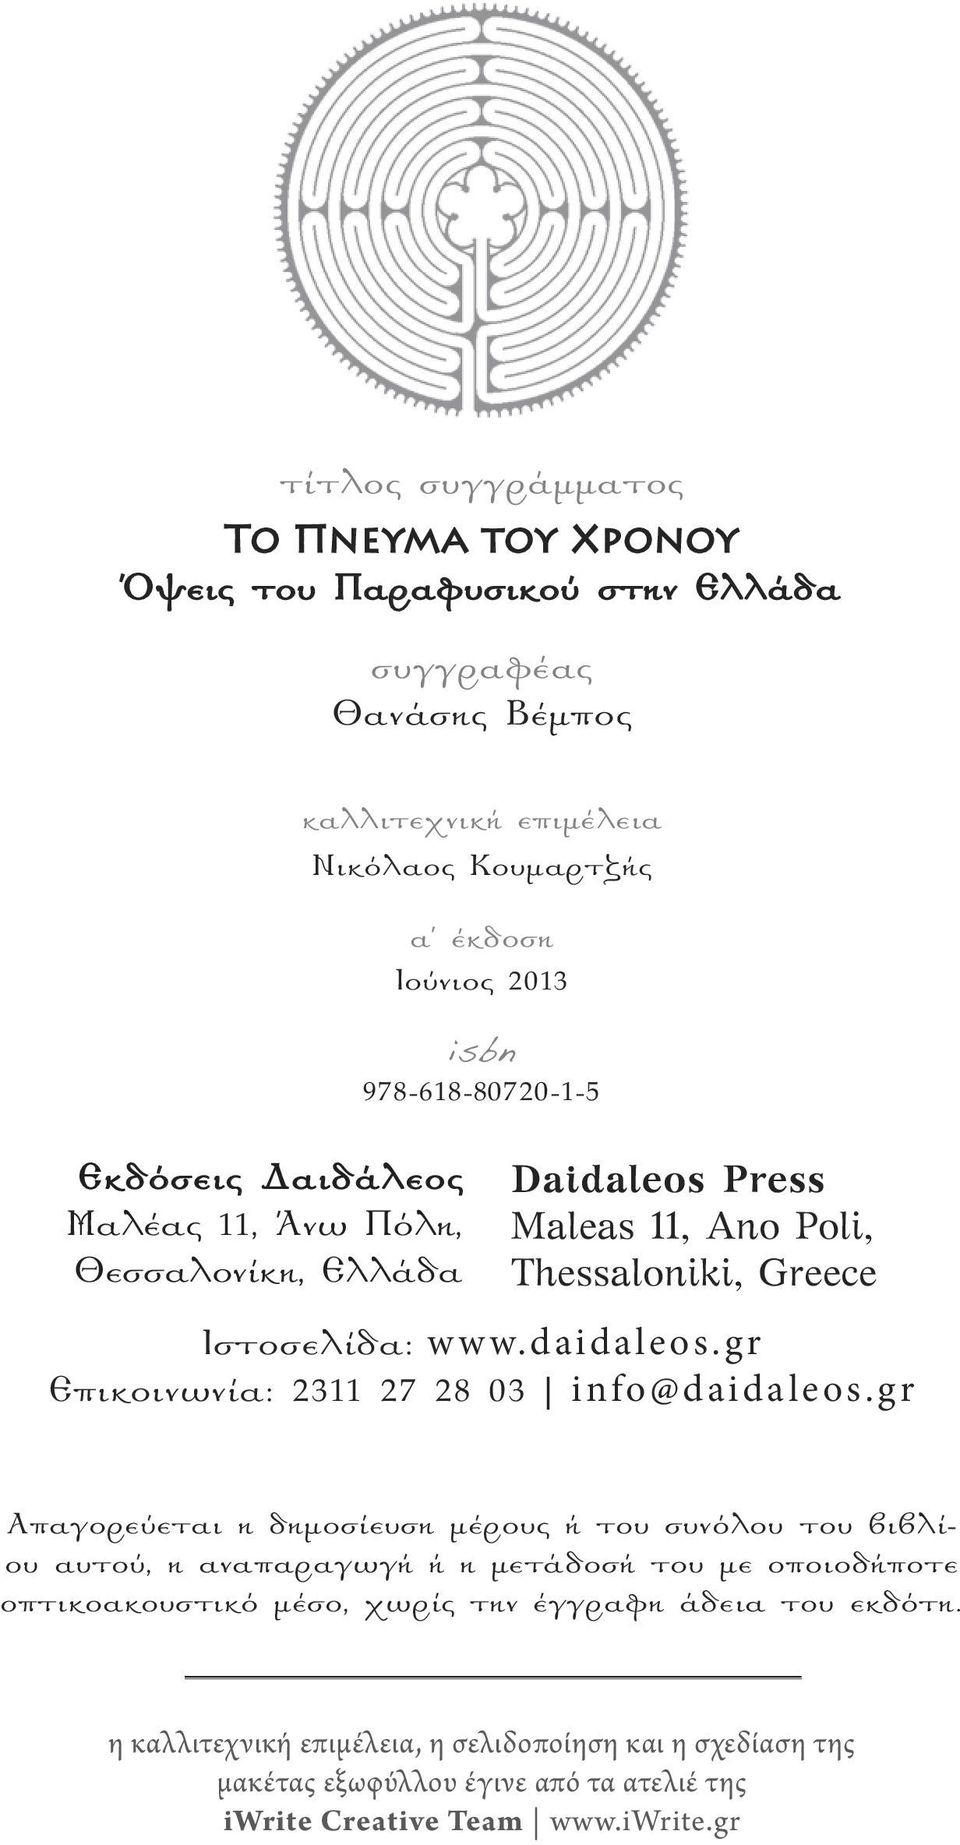 Ιστοσελίδα: www.daidaleos.gr Επικοινωνία: 2311 27 28 03 info@daidaleos.